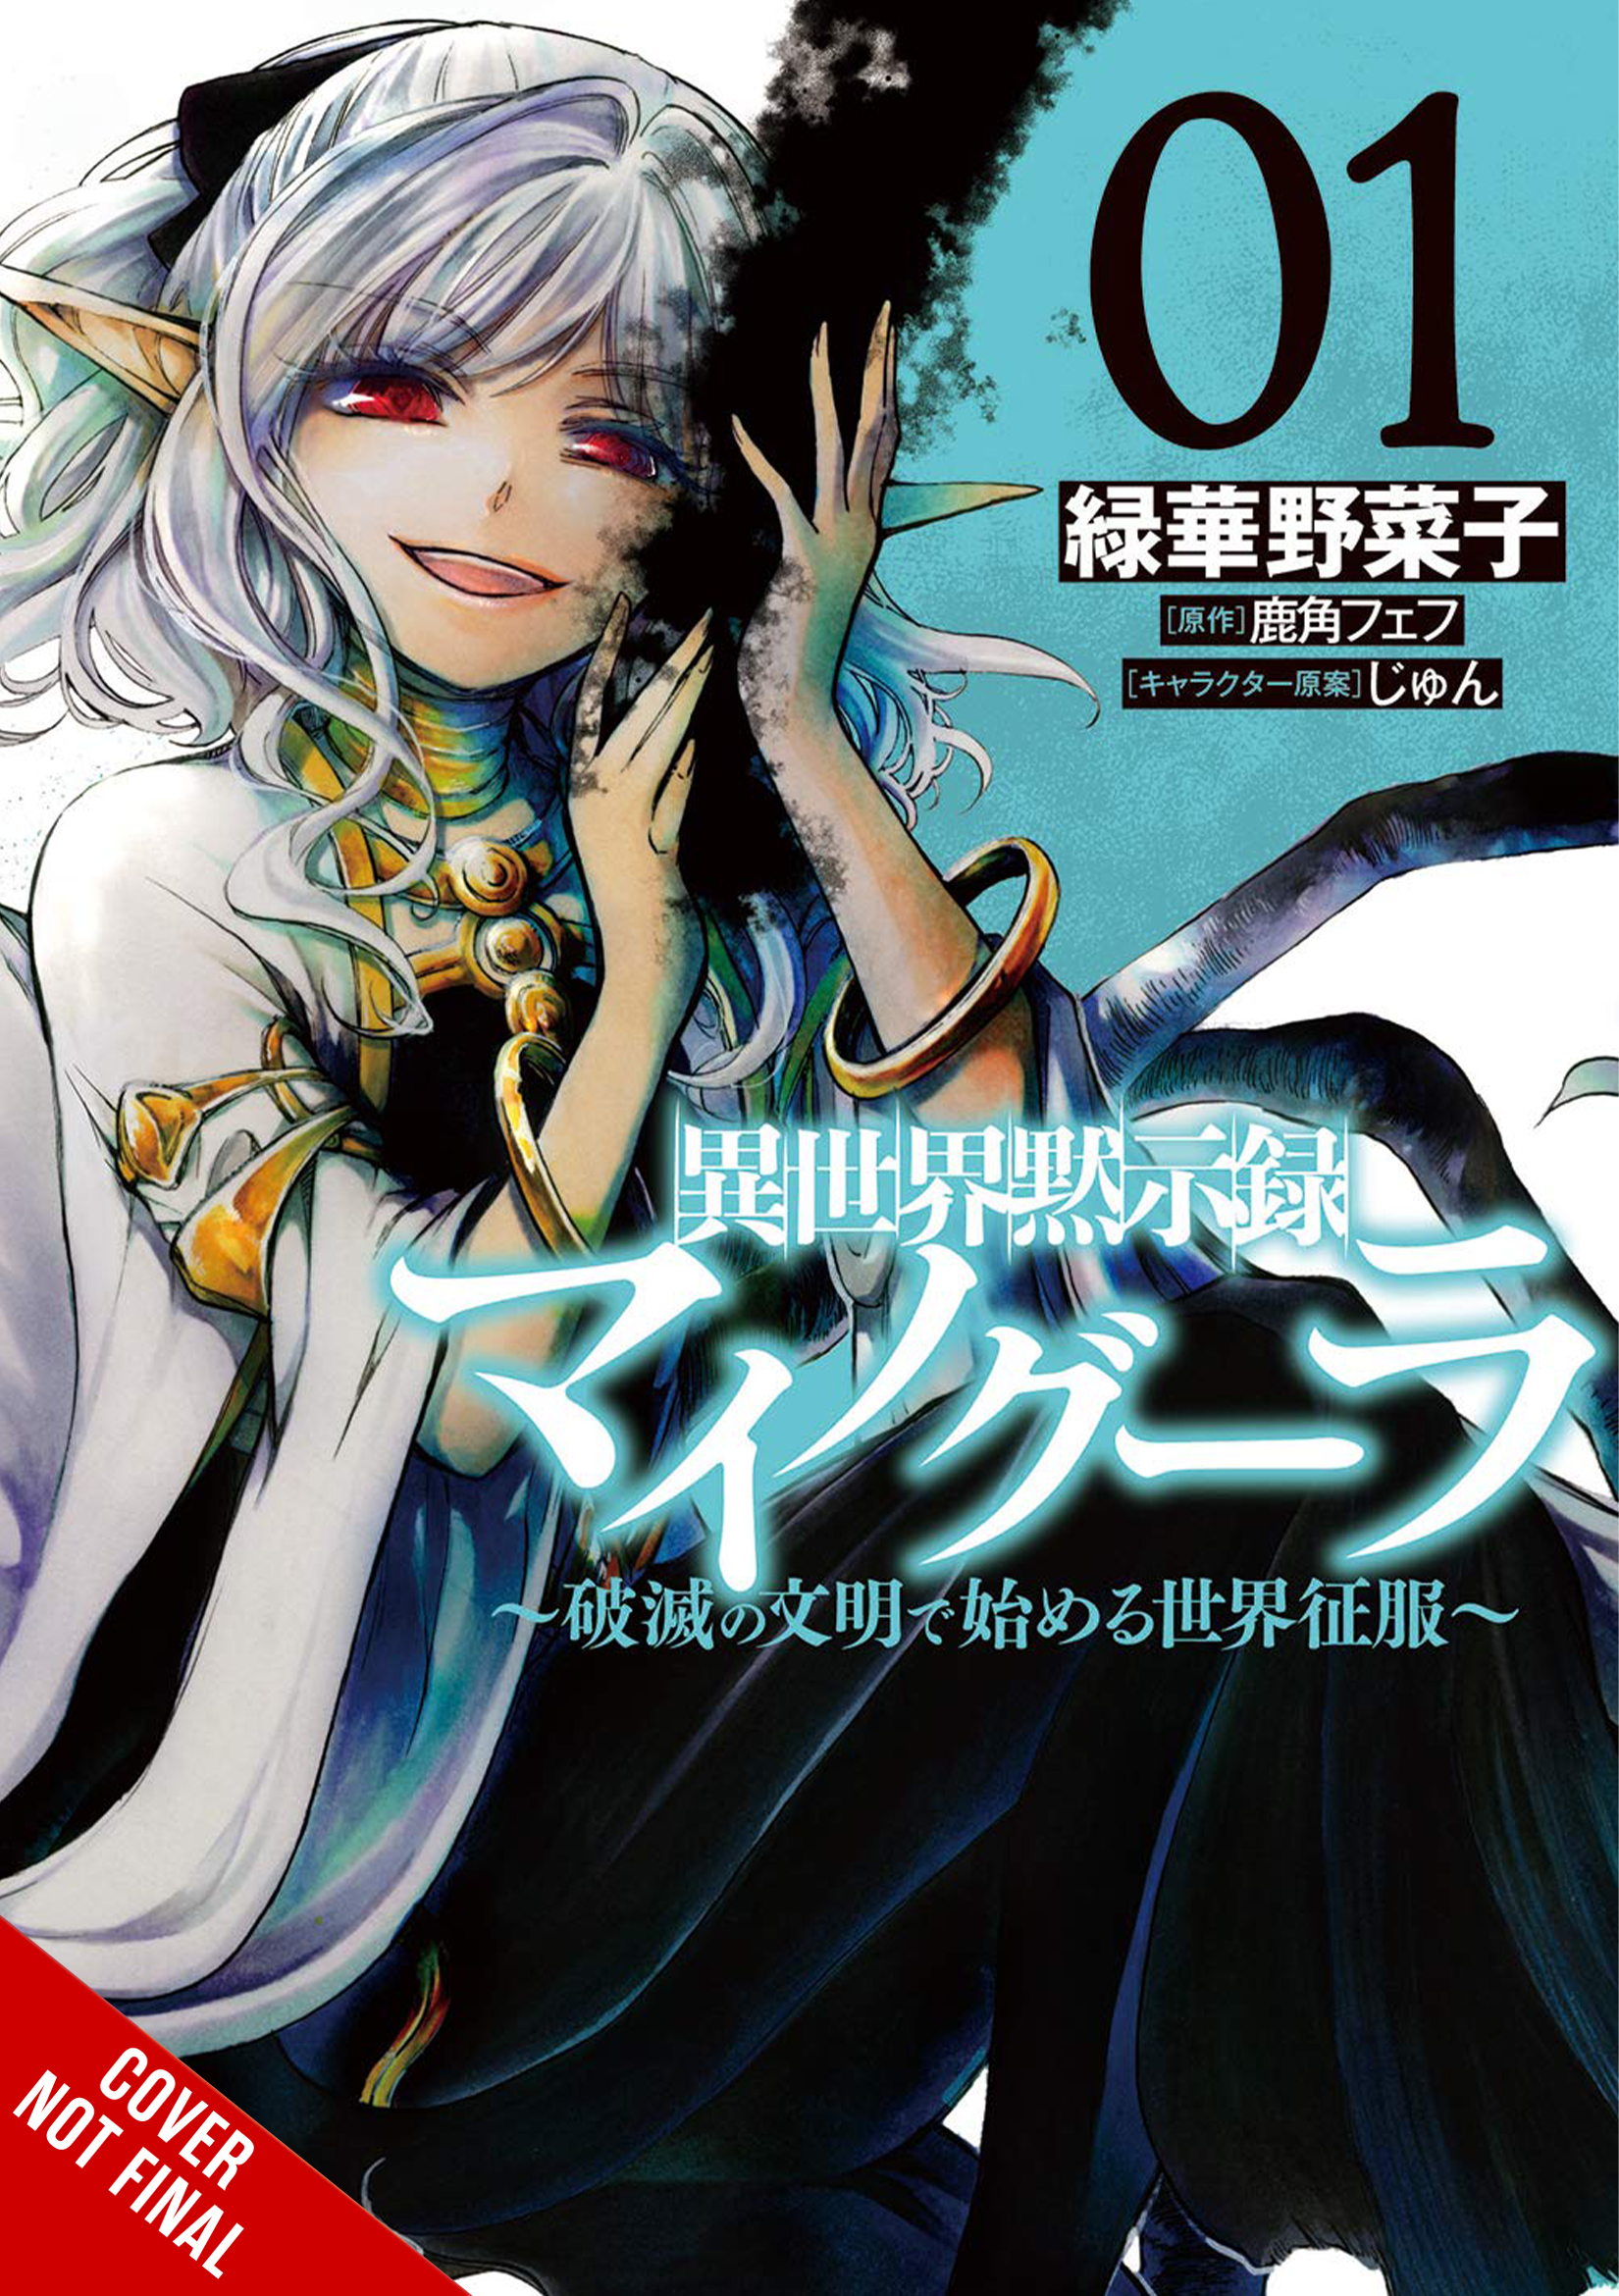 Apocalypse Bringer Mynoghra Manga Volume 1